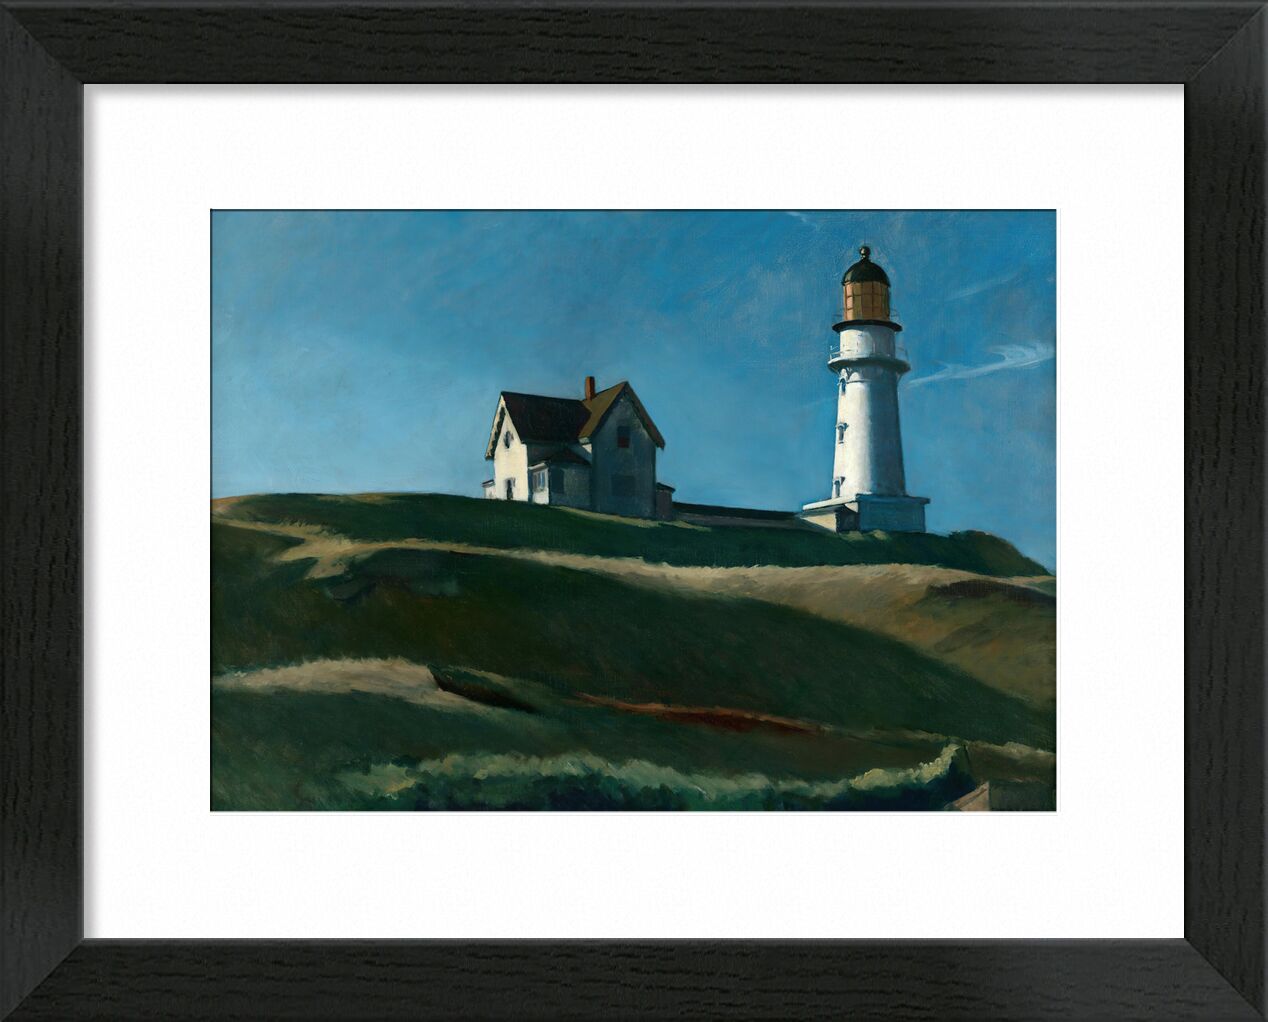 Leuchtturm-Hügel - Edward Hopper von Bildende Kunst, Prodi Art, Edward Hopper, Leuchtturm, hügel, Landschaft, Wiese